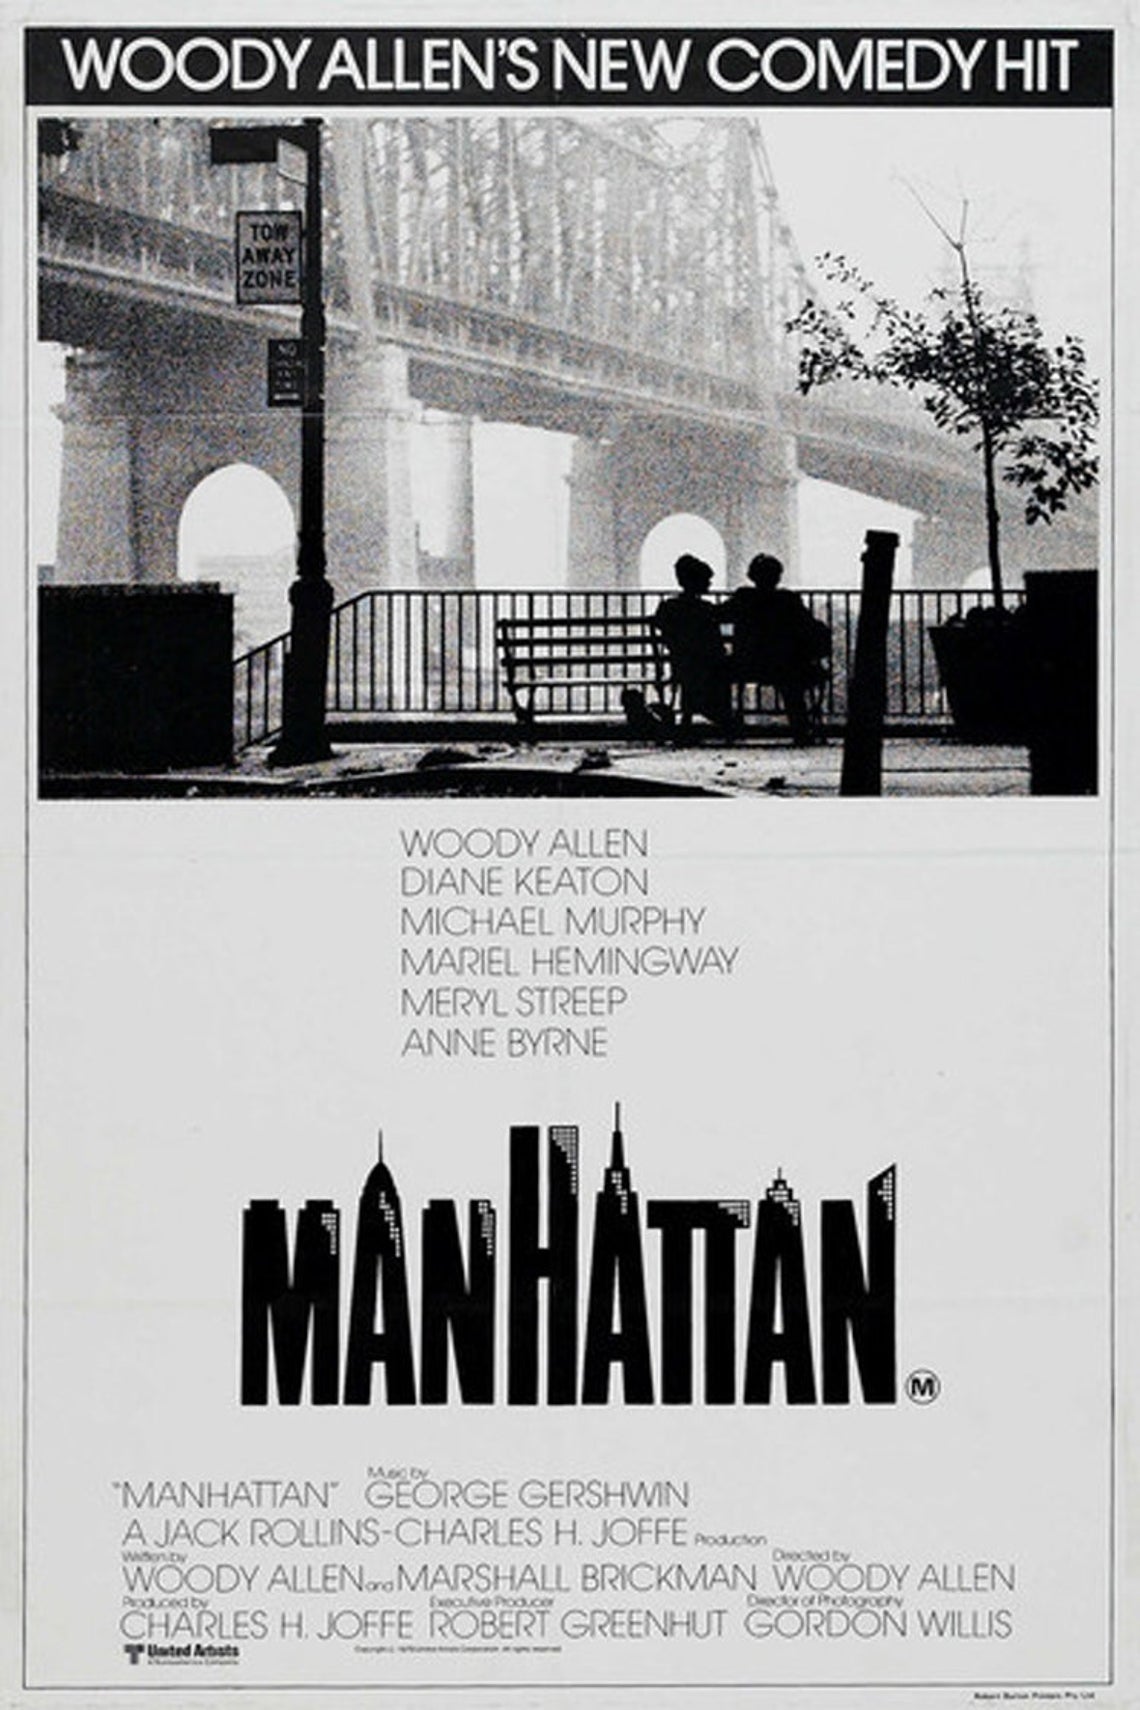 Manhatten movie poster.